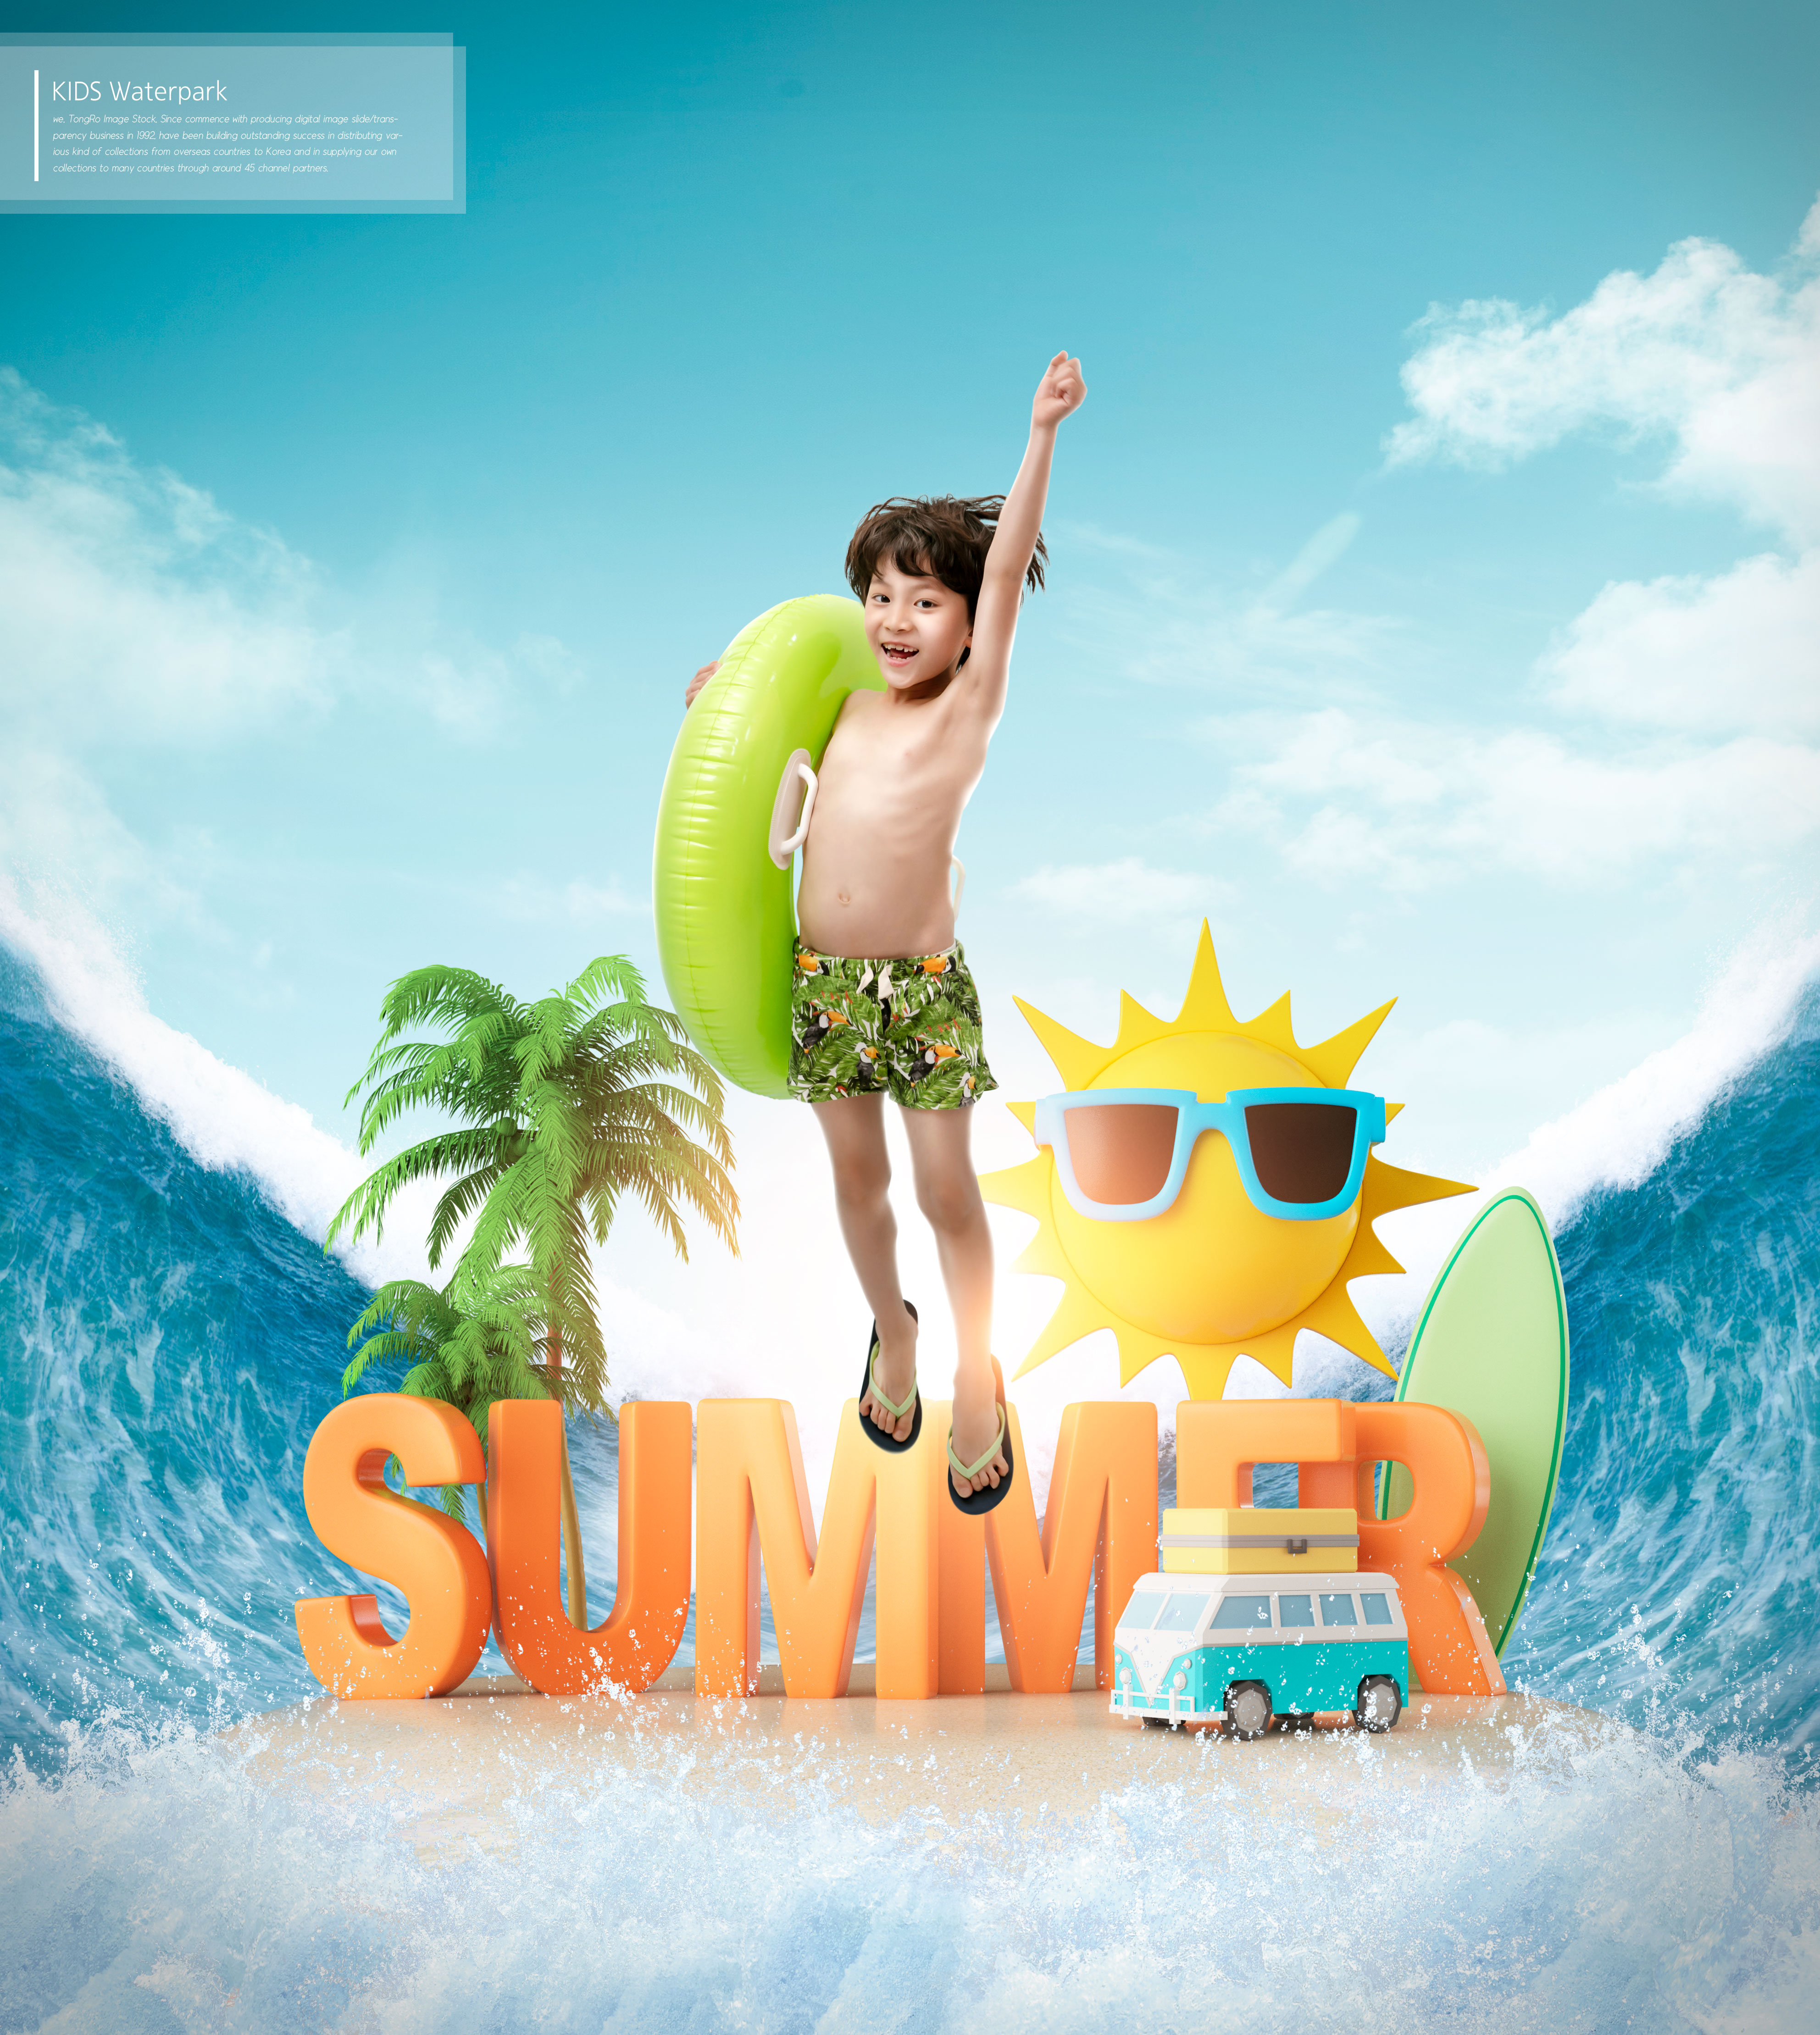 夏季暑假儿童水上乐园活动广告海报设计套装插图(3)